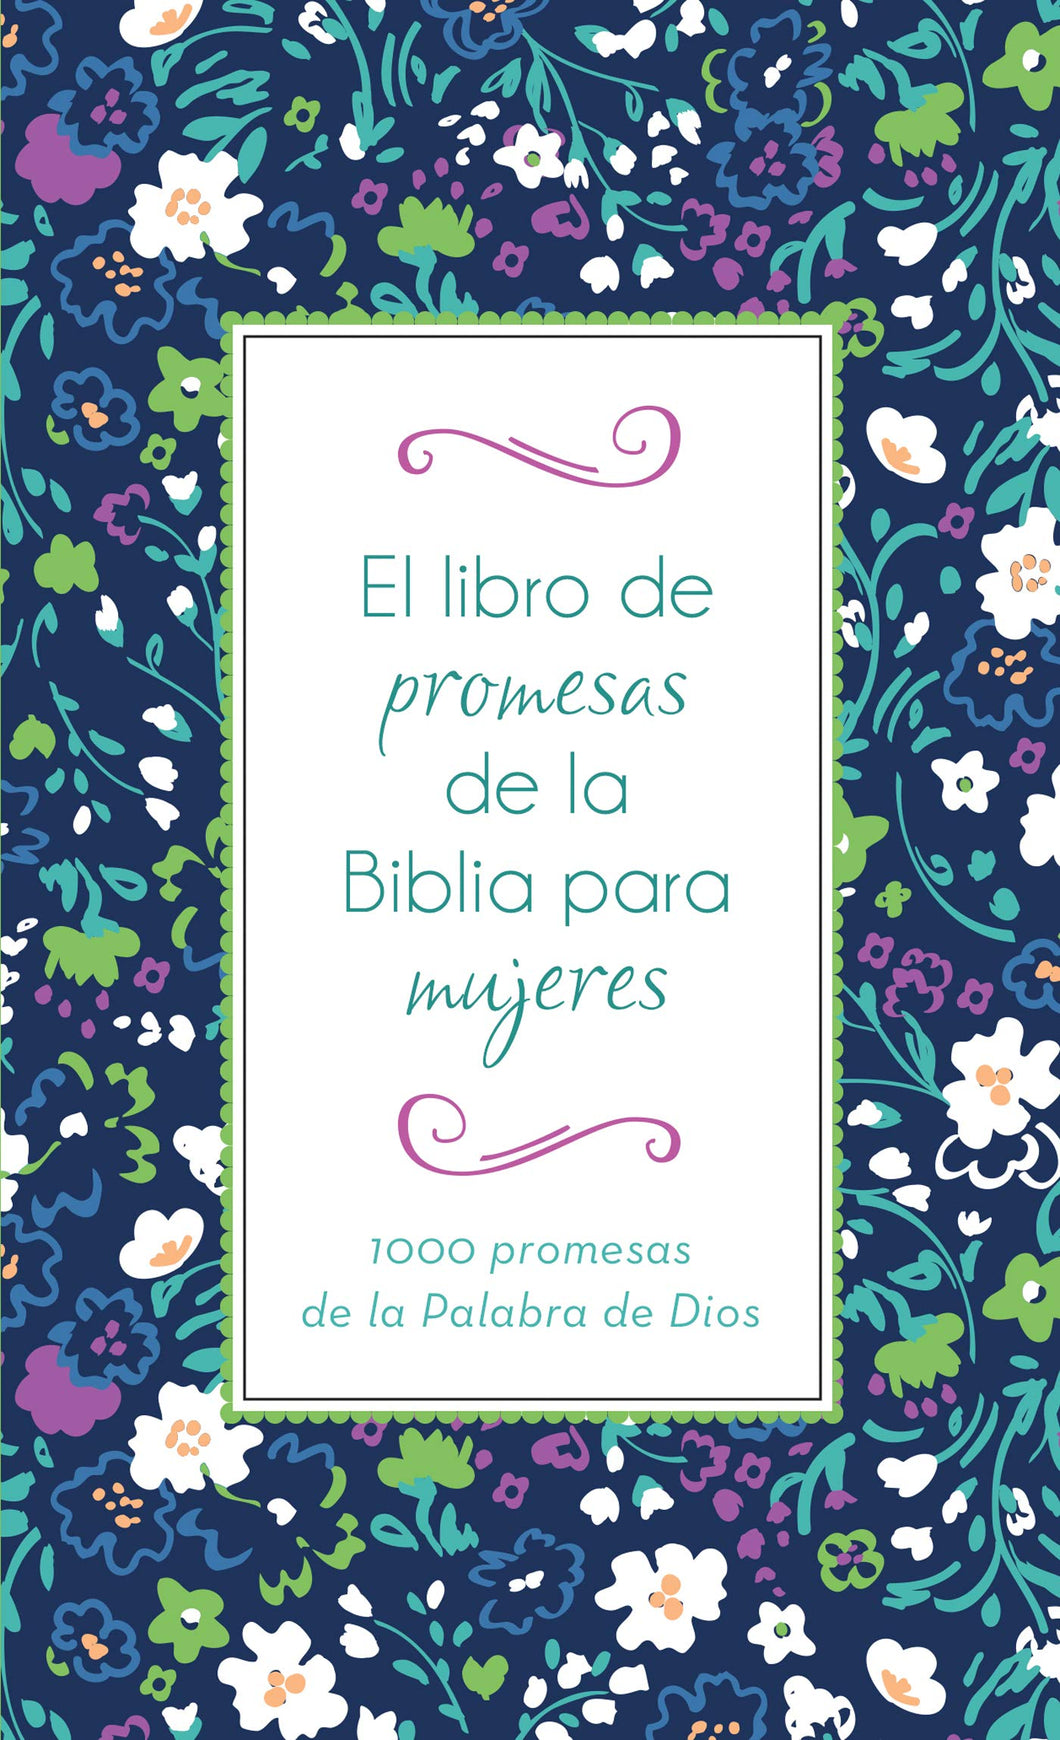 EL LIBRO DE PROMESAS DE LA BIBLIA PARA MUJERES- 1000 PROMESAS DE LA PALABRA DE DIOS